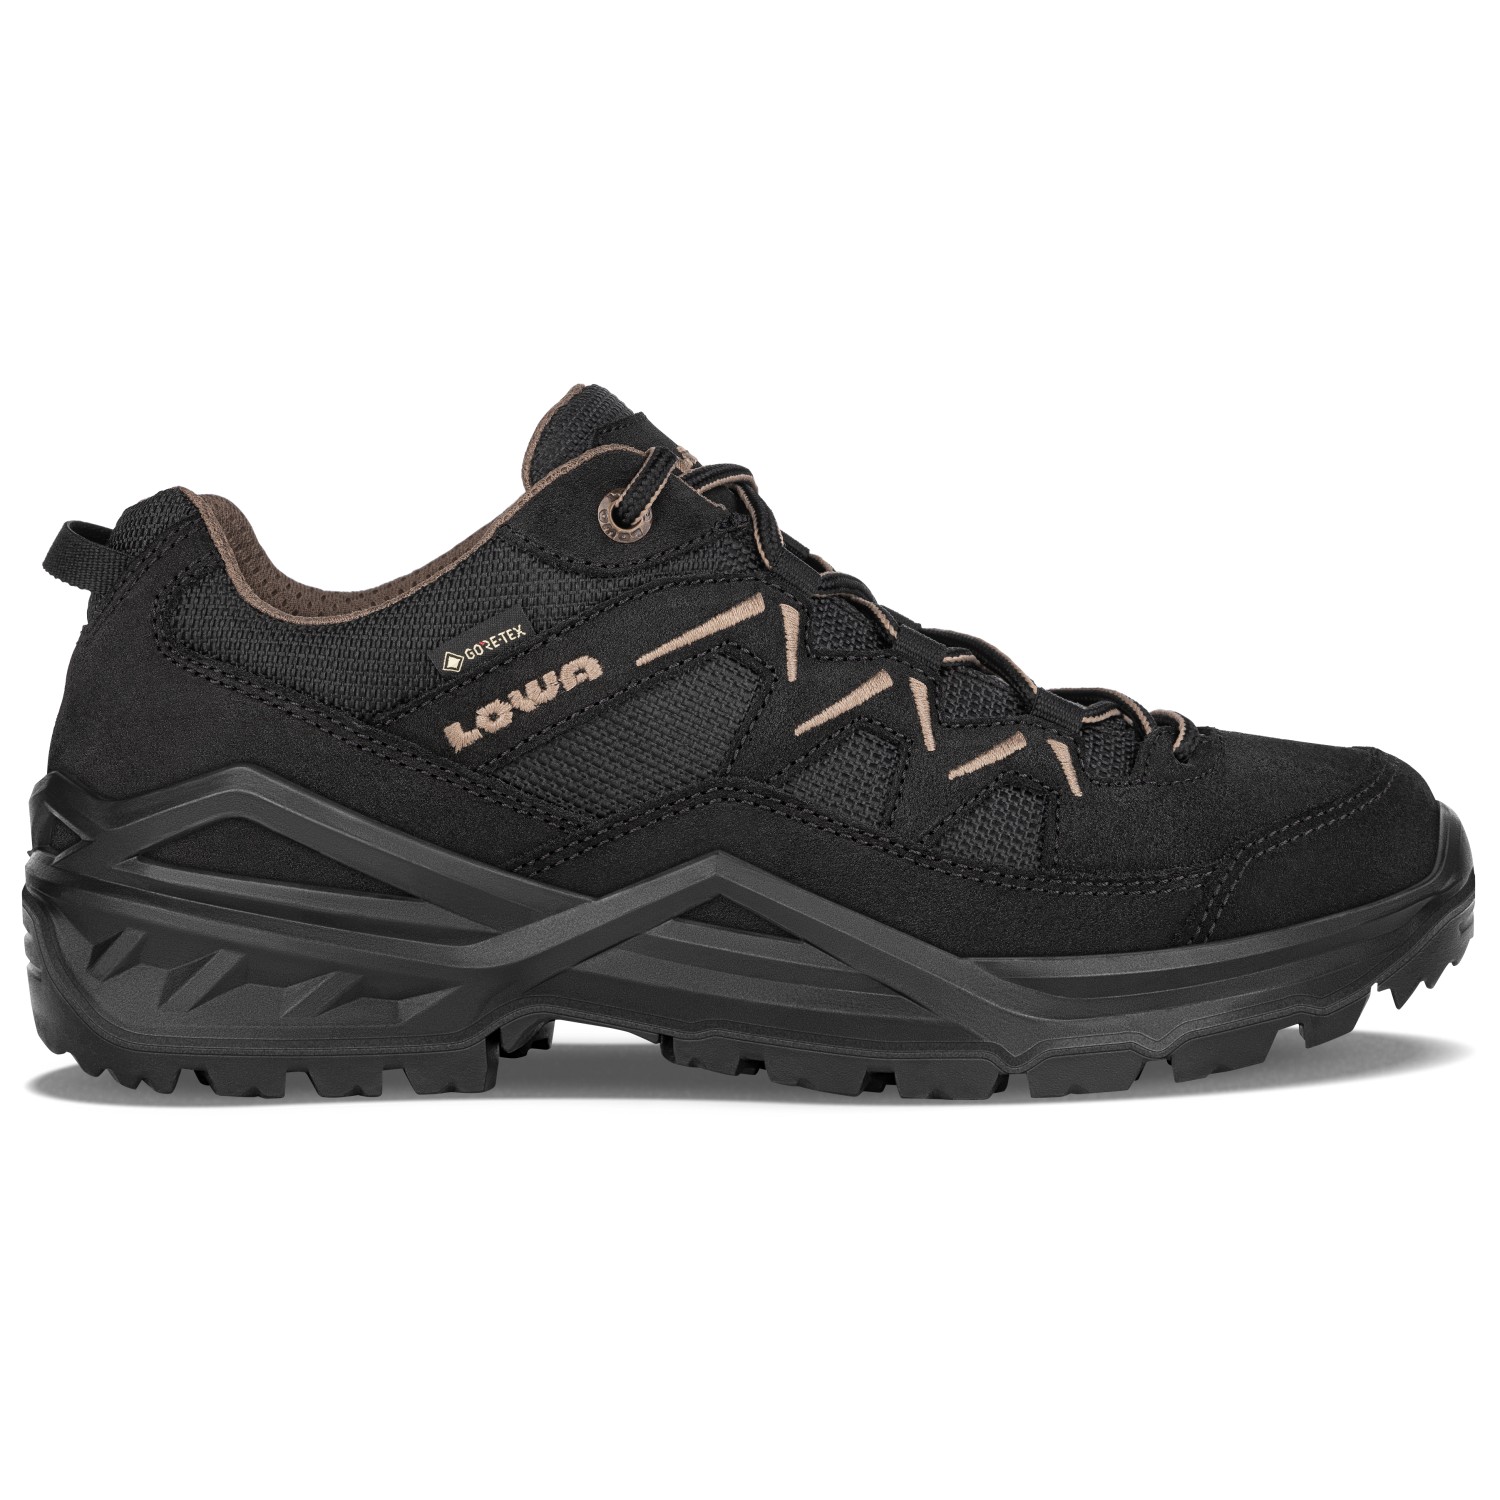 Мультиспортивная обувь Lowa Sirkos Evo GTX LO, цвет Black/Dune